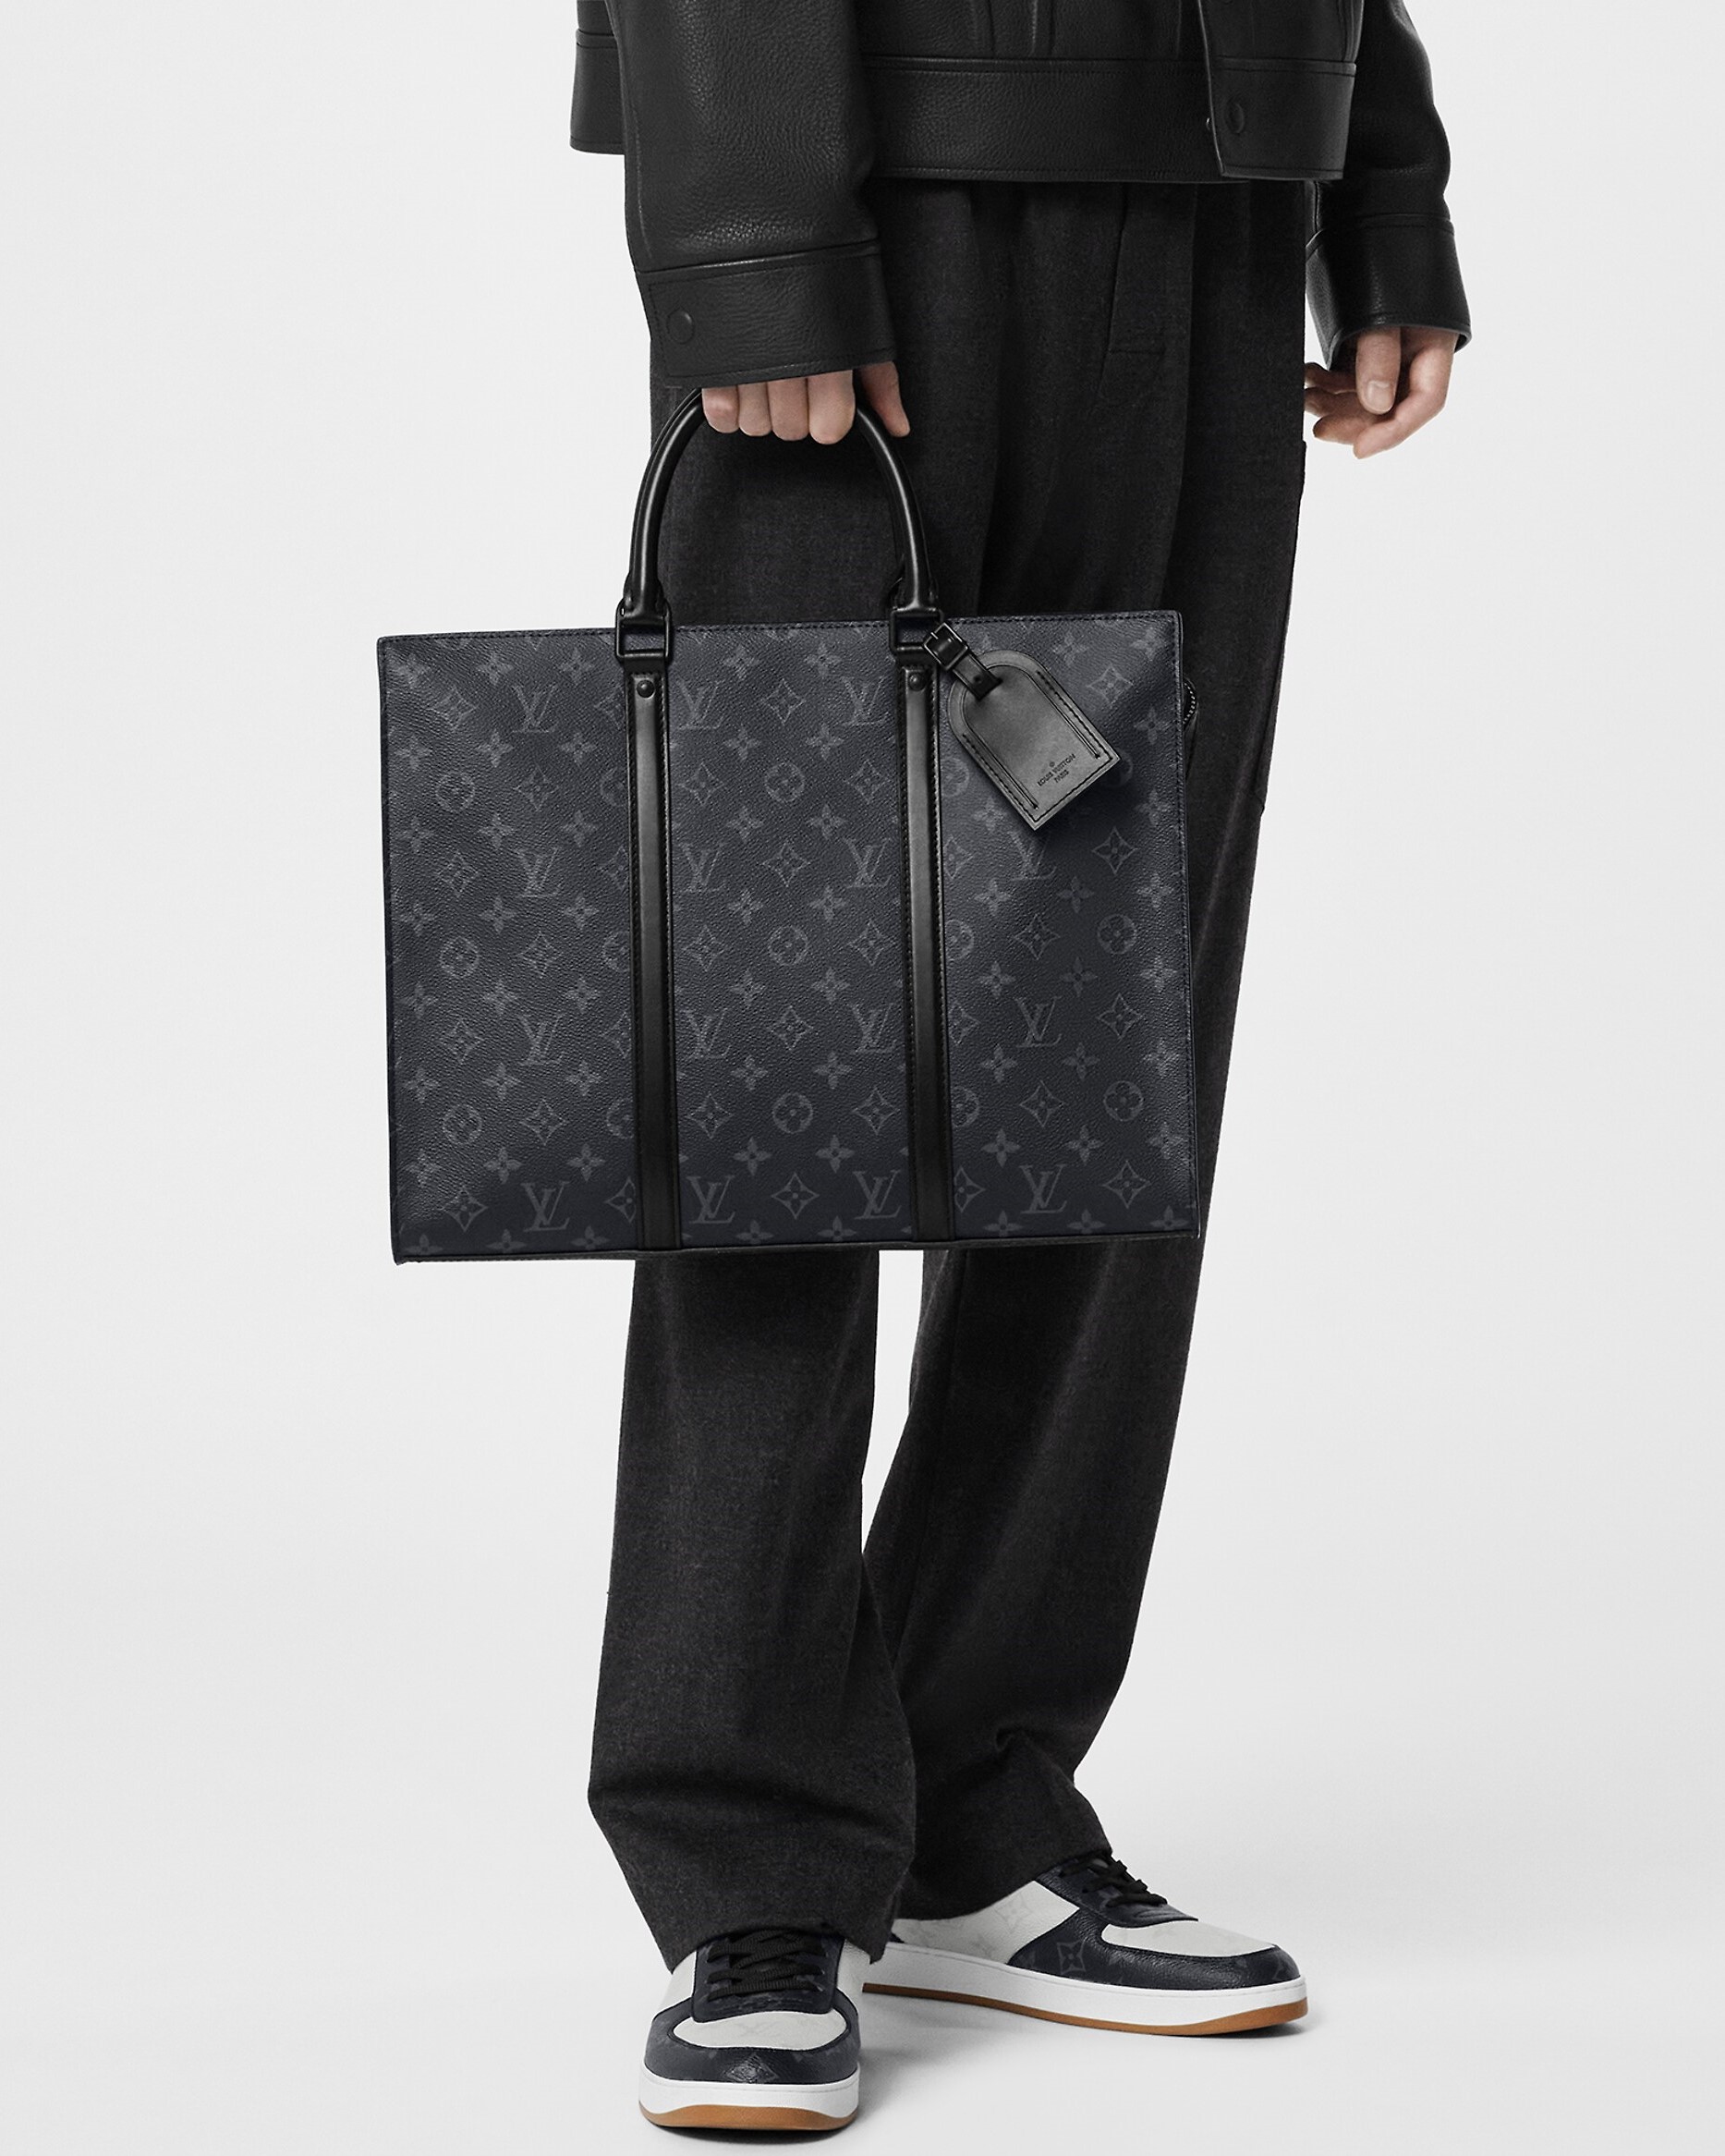 Túi Xách Louis Vuitton Dauphine MM Bag Black Màu Đen 25x17x105cm  DWatch  Luxury